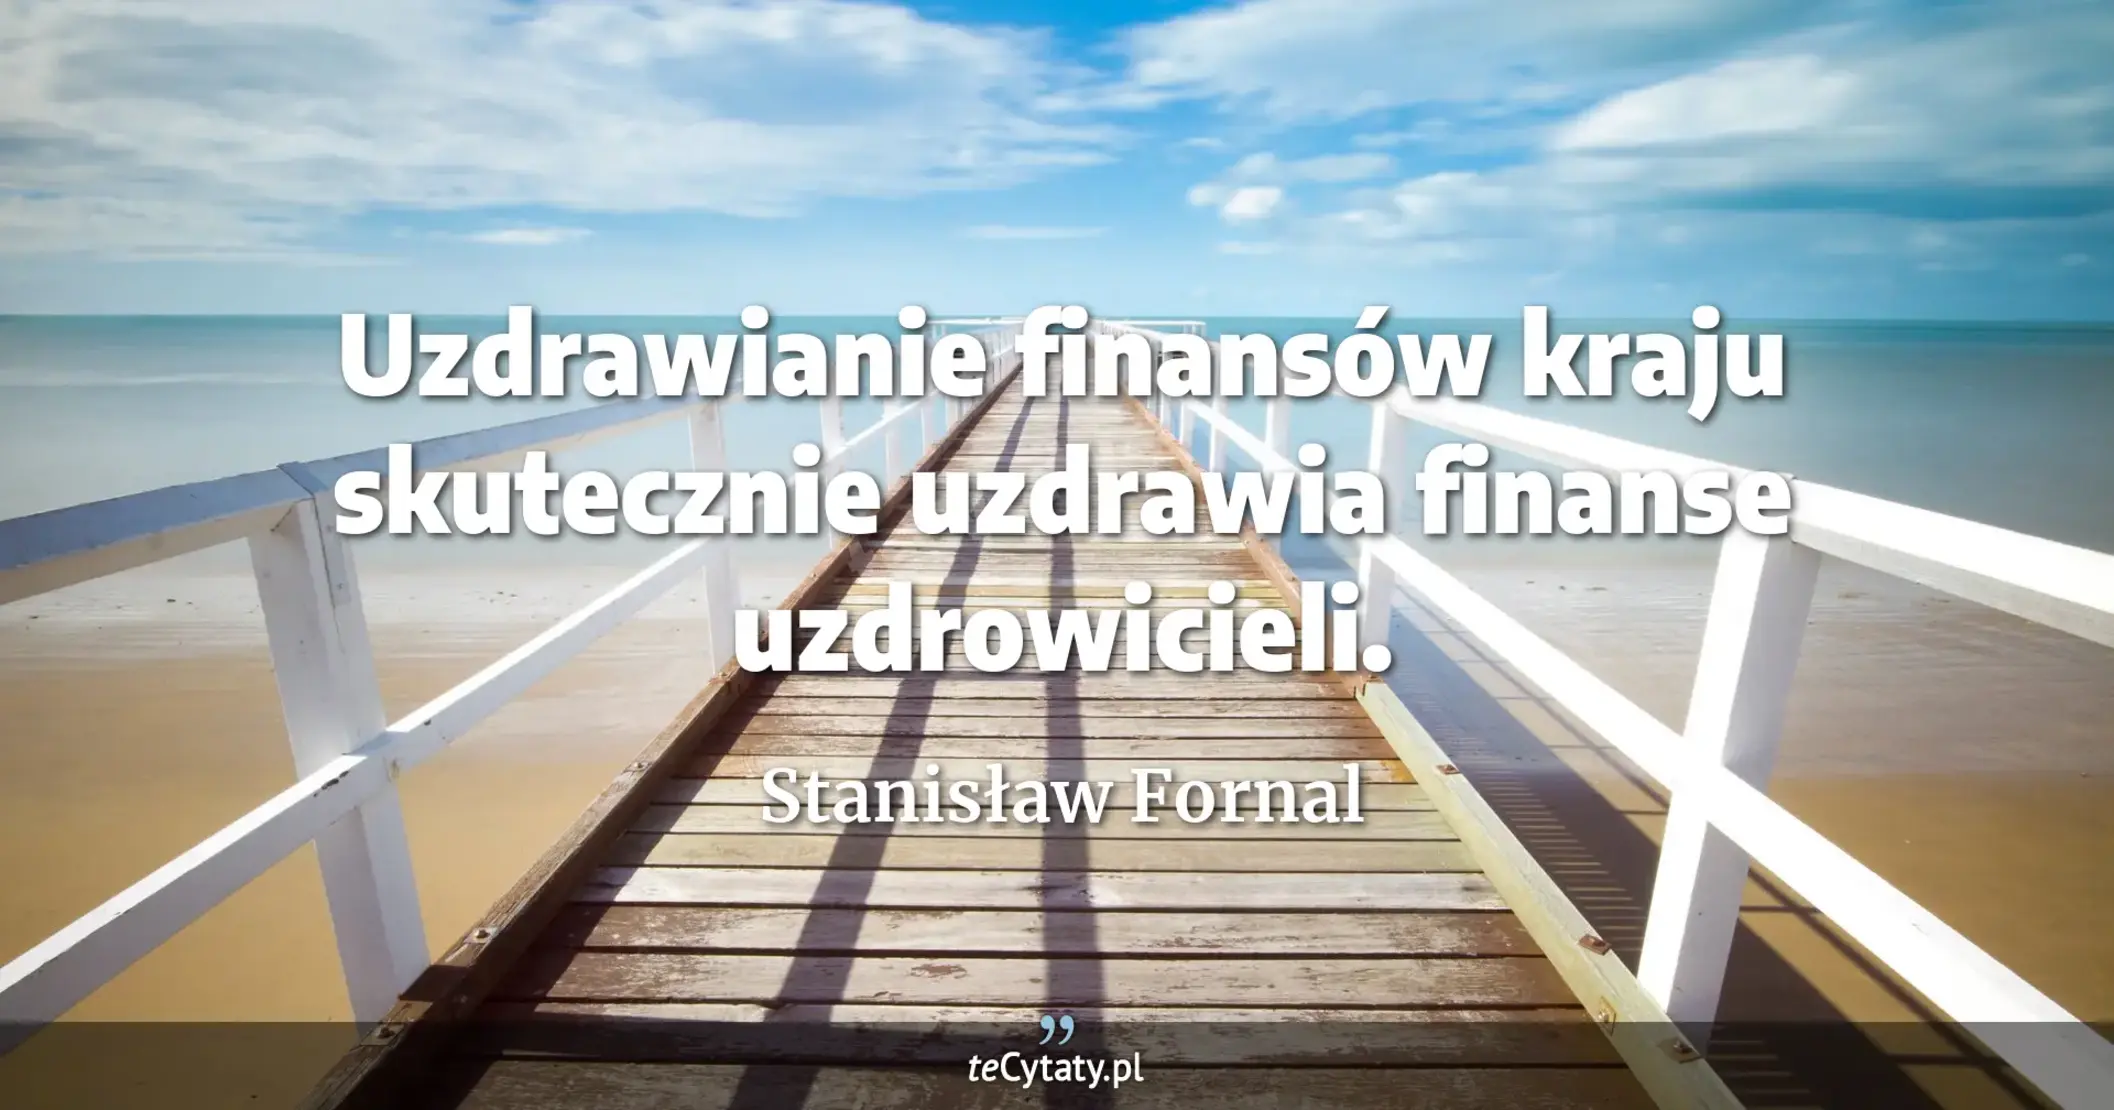 Uzdrawianie finansów kraju skutecznie uzdrawia finanse uzdrowicieli. - Stanisław Fornal